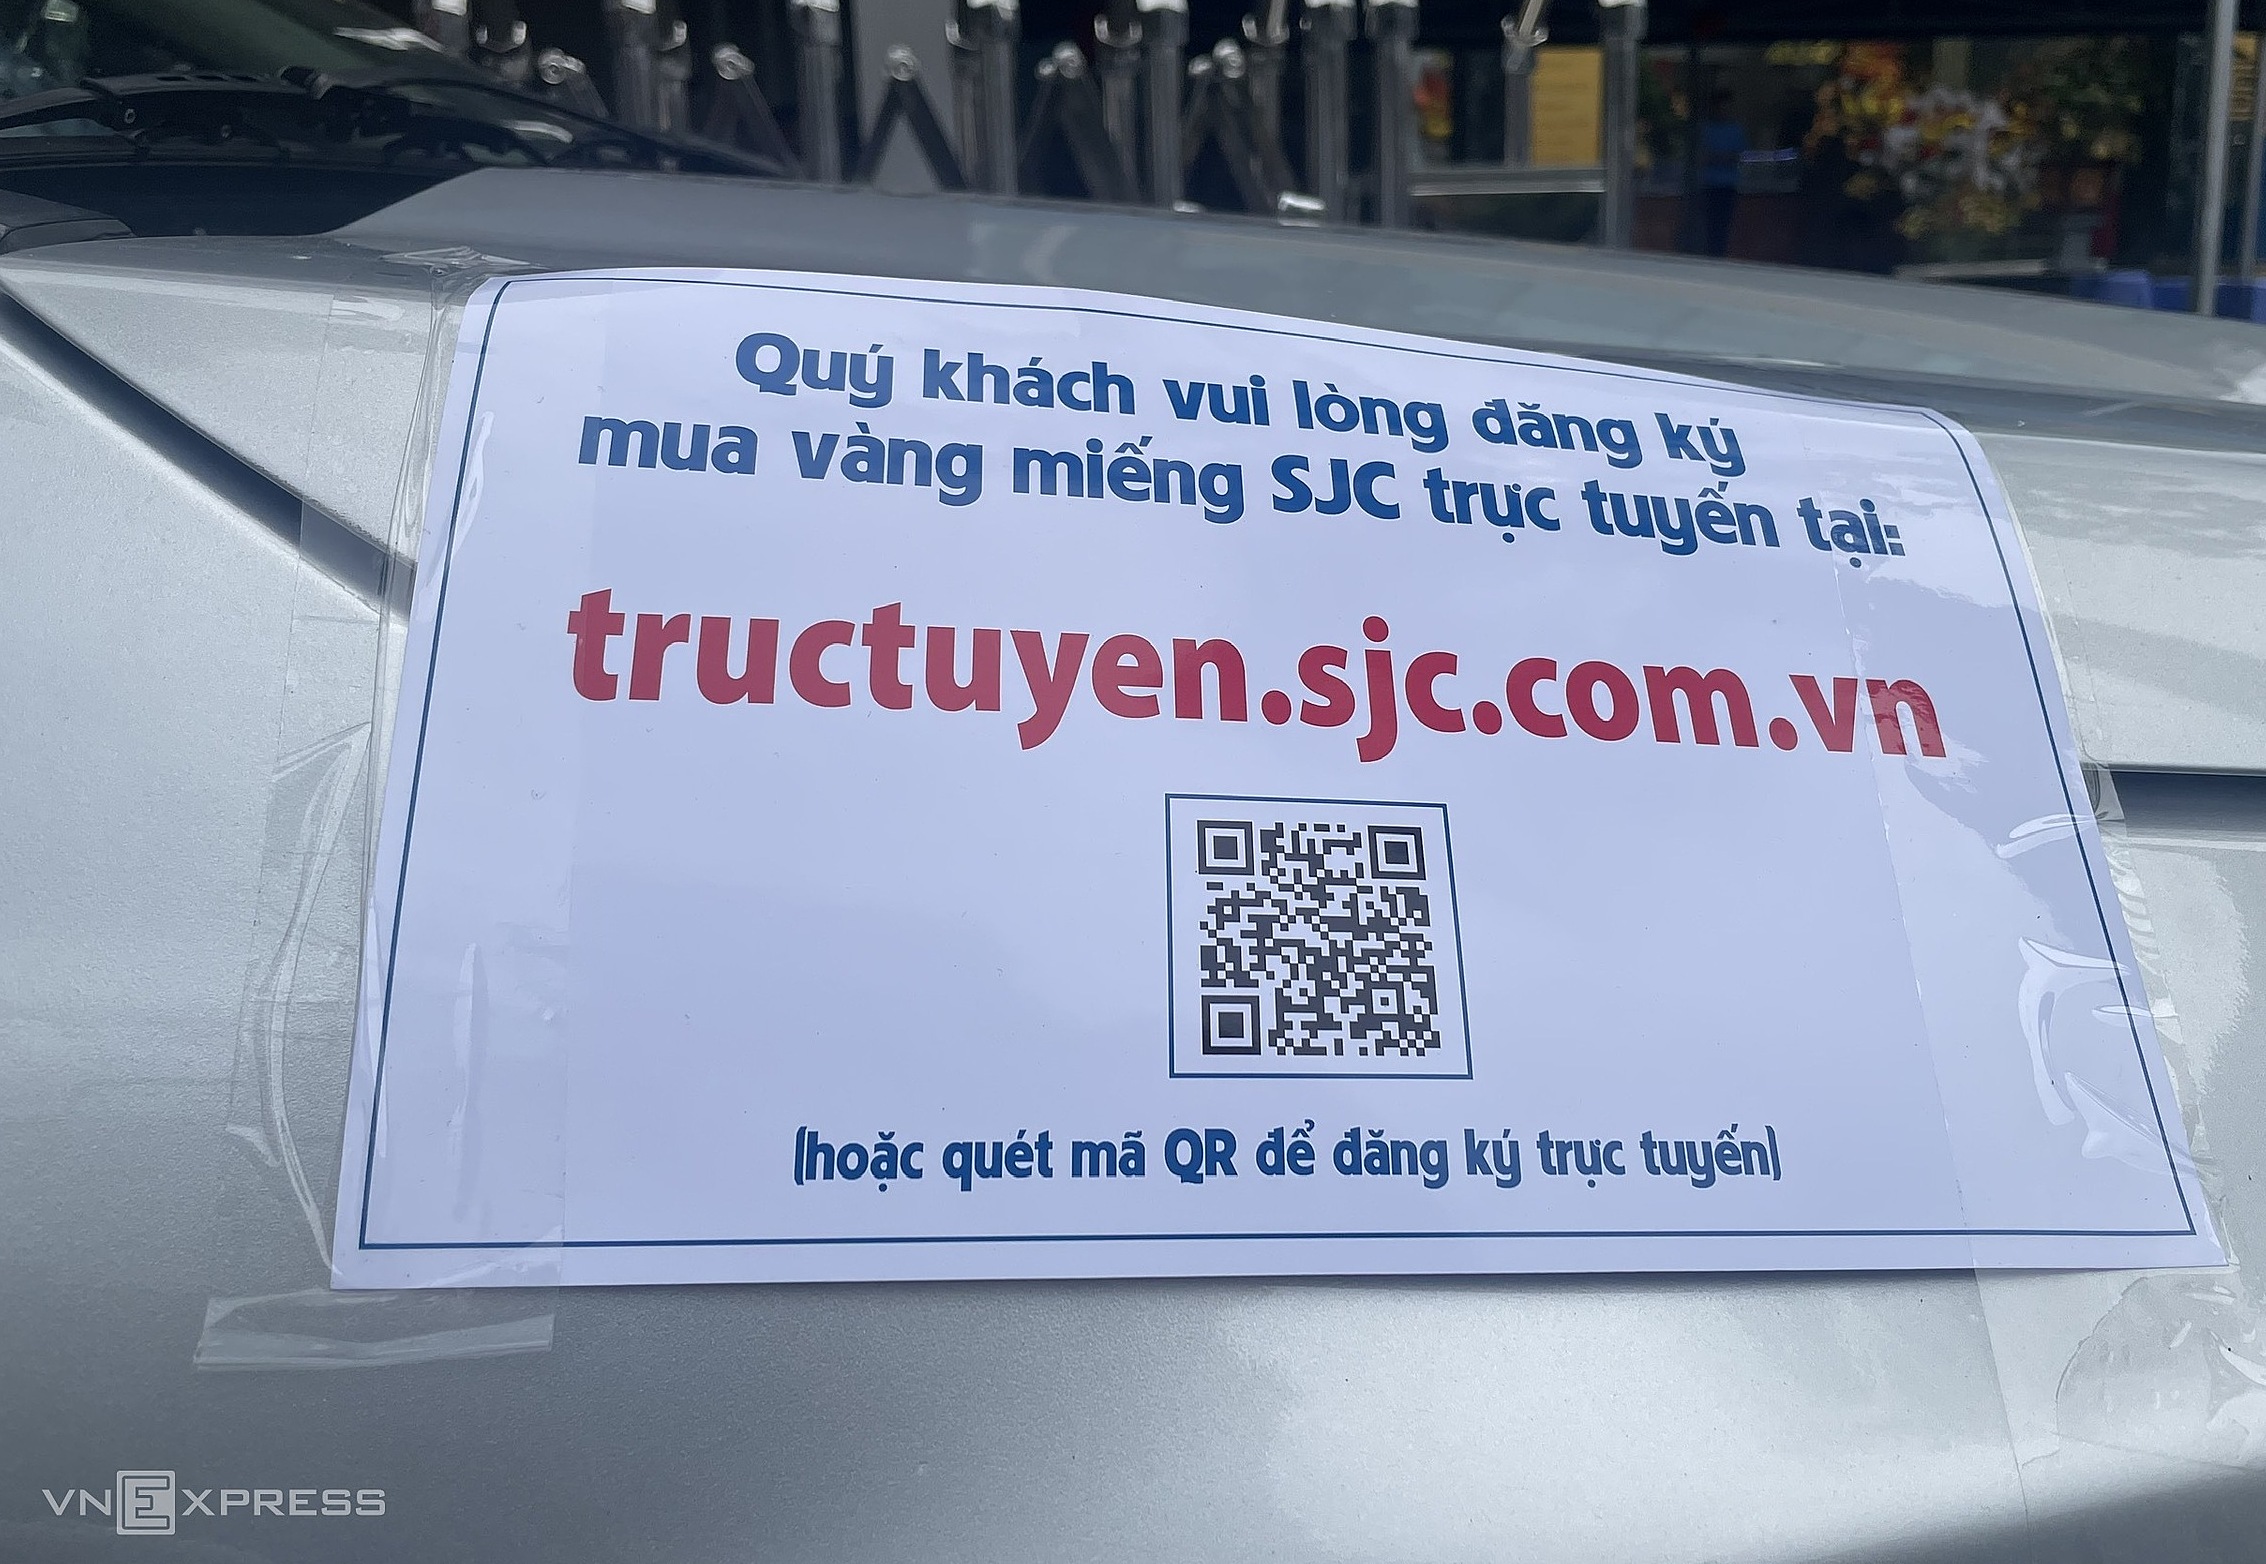 SJC sáng nay giải tán khách hàng tụ tập trước trụ sở tại Nguyễn Thị Minh Khai (quận 3, TP HCM), đồng thời dán thông báo về việc đăng ký mua vàng trực tuyến qua website. Ảnh: Quỳnh Trang